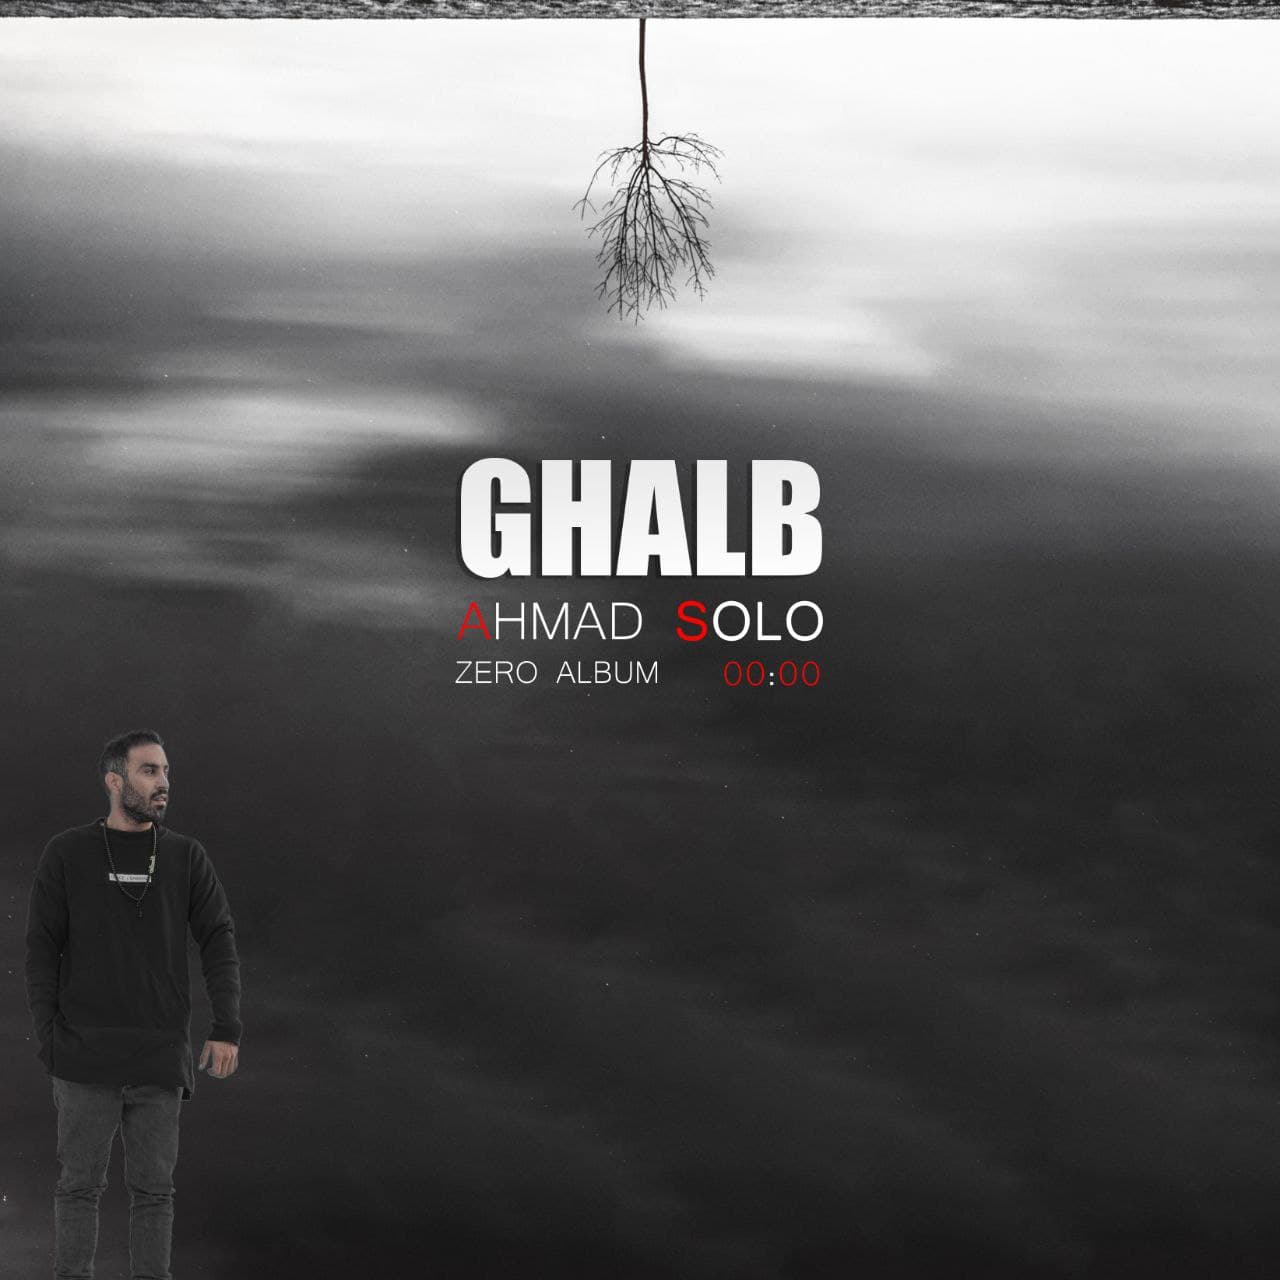  دانلود آهنگ جدید احمد سلو - قلب | Download New Music By Ahmad Solo - Ghalb